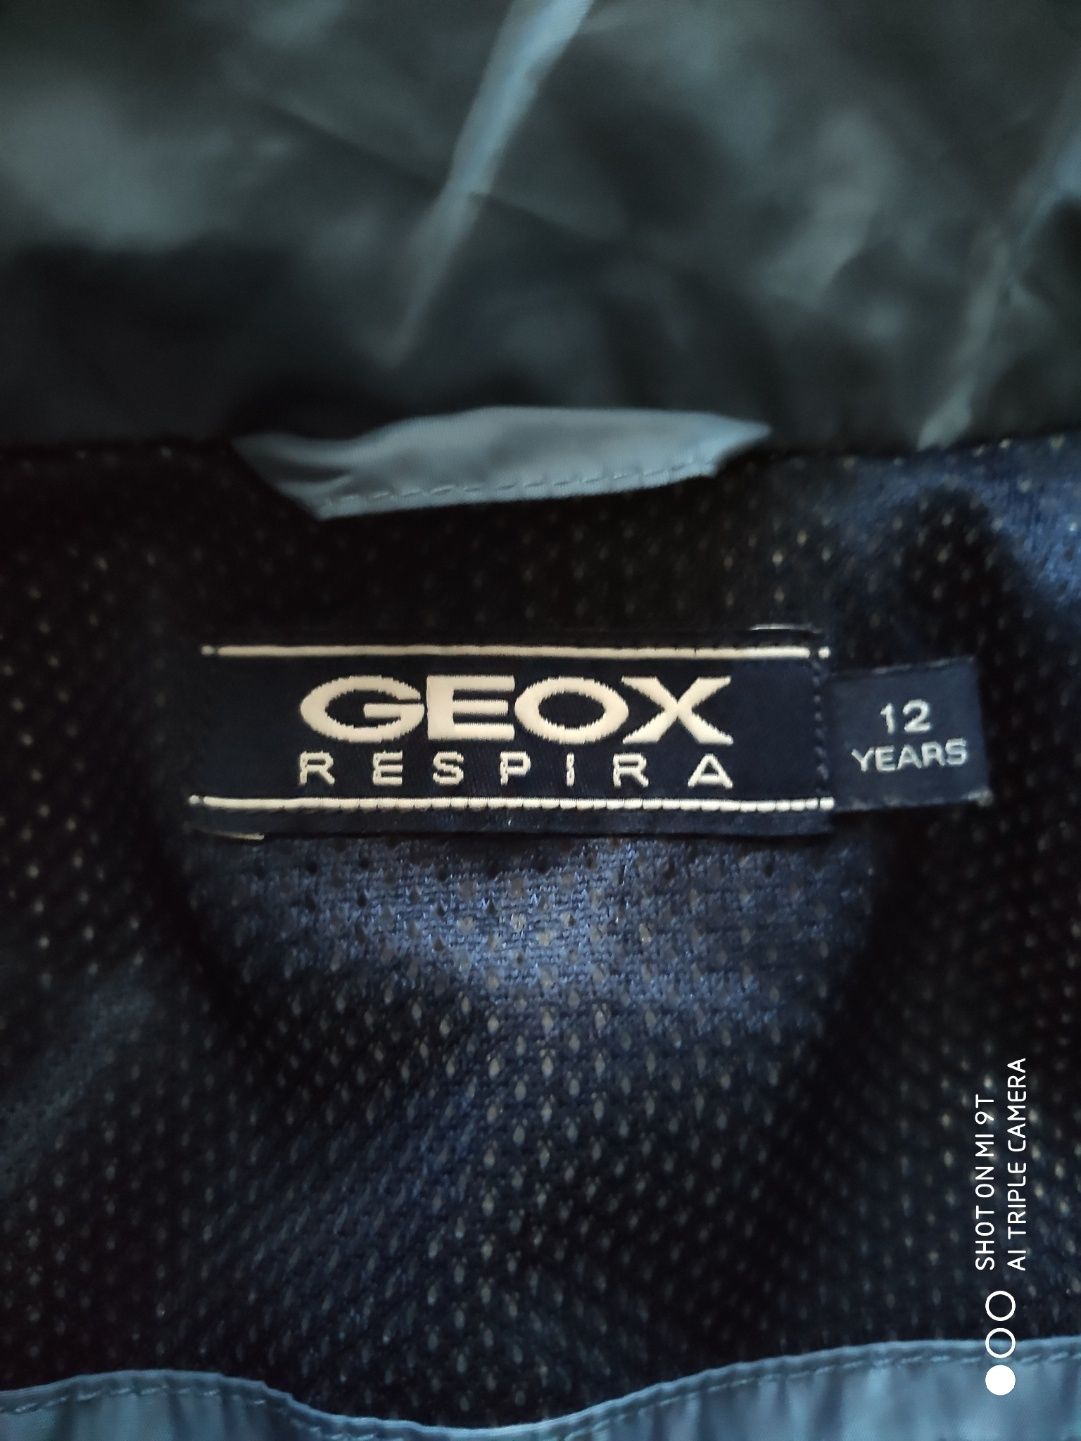 Куртка Geox Respira 12/152, торг